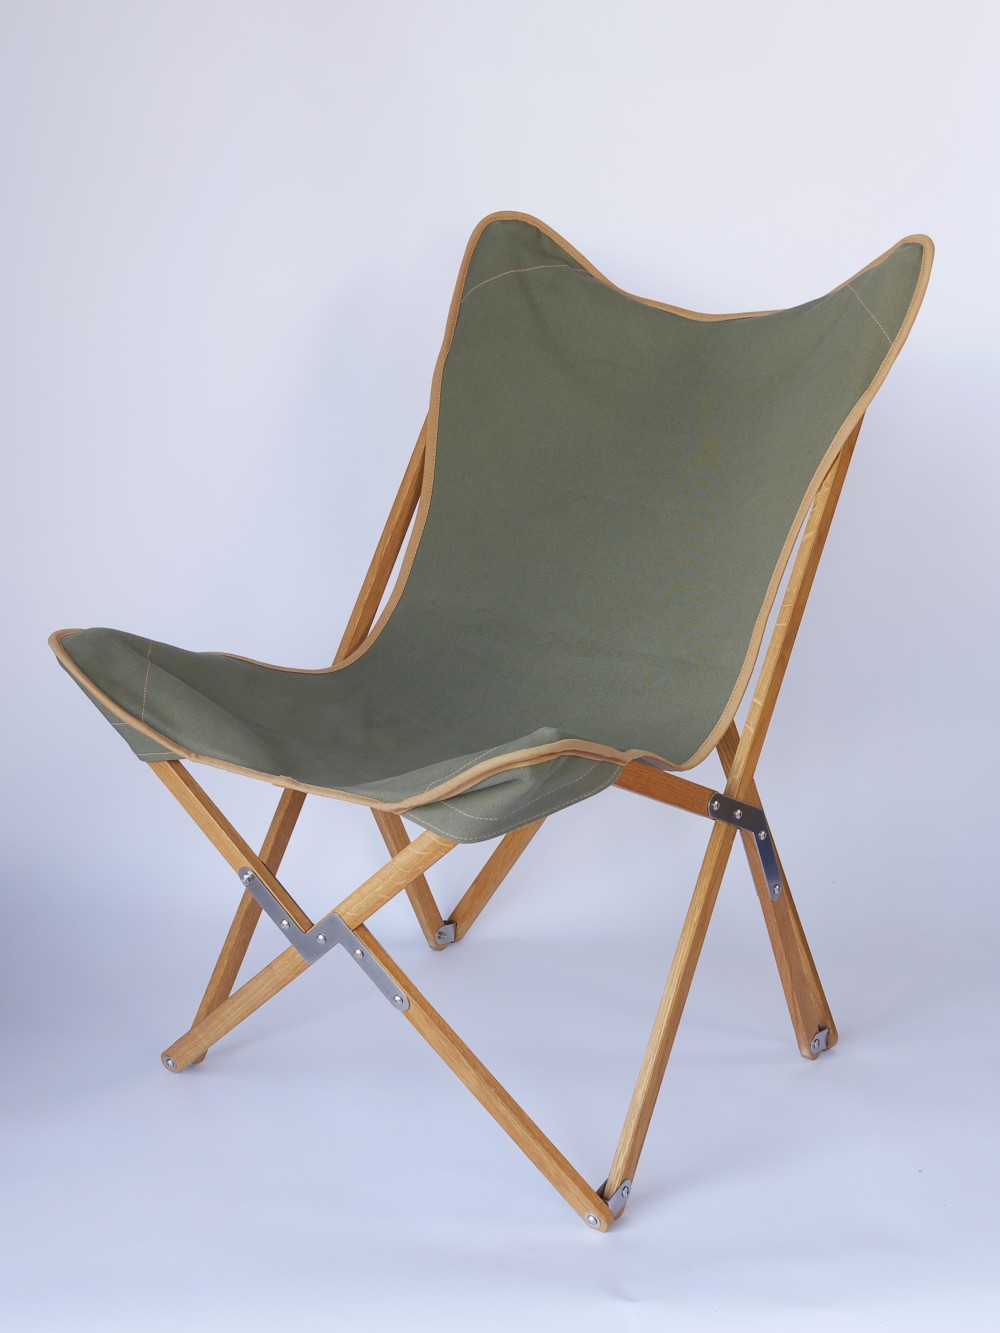 Kampierstuhl aus Eiche mit Sitzfläche Segeltuch olivgrün